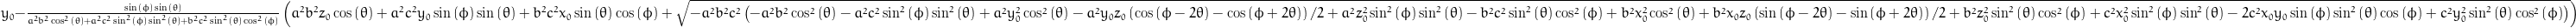 y_{0} - \frac{\sin{\left (\phi \right )} \sin{\left (\theta \right )}}{a^{2} b^{2} \cos^{2}{\left (\theta \right )} + a^{2} c^{2} \sin^{2}{\left (\phi \right )} \sin^{2}{\left (\theta \right )} + b^{2} c^{2} \sin^{2}{\left (\theta \right )} \cos^{2}{\left (\phi \right )}} \left(a^{2} b^{2} z_{0} \cos{\left (\theta \right )} + a^{2} c^{2} y_{0} \sin{\left (\phi \right )} \sin{\left (\theta \right )} + b^{2} c^{2} x_{0} \sin{\left (\theta \right )} \cos{\left (\phi \right )} + \sqrt{- a^{2} b^{2} c^{2} \left(- a^{2} b^{2} \cos^{2}{\left (\theta \right )} - a^{2} c^{2} \sin^{2}{\left (\phi \right )} \sin^{2}{\left (\theta \right )} + a^{2} y_{0}^{2} \cos^{2}{\left (\theta \right )} - \frac{y_{0} z_{0}}{2} a^{2} \left(\cos{\left (\phi - 2 \theta \right )} - \cos{\left (\phi + 2 \theta \right )}\right) + a^{2} z_{0}^{2} \sin^{2}{\left (\phi \right )} \sin^{2}{\left (\theta \right )} - b^{2} c^{2} \sin^{2}{\left (\theta \right )} \cos^{2}{\left (\phi \right )} + b^{2} x_{0}^{2} \cos^{2}{\left (\theta \right )} + \frac{x_{0} z_{0}}{2} b^{2} \left(\sin{\left (\phi - 2 \theta \right )} - \sin{\left (\phi + 2 \theta \right )}\right) + b^{2} z_{0}^{2} \sin^{2}{\left (\theta \right )} \cos^{2}{\left (\phi \right )} + c^{2} x_{0}^{2} \sin^{2}{\left (\phi \right )} \sin^{2}{\left (\theta \right )} - 2 c^{2} x_{0} y_{0} \sin{\left (\phi \right )} \sin^{2}{\left (\theta \right )} \cos{\left (\phi \right )} + c^{2} y_{0}^{2} \sin^{2}{\left (\theta \right )} \cos^{2}{\left (\phi \right )}\right)}\right)